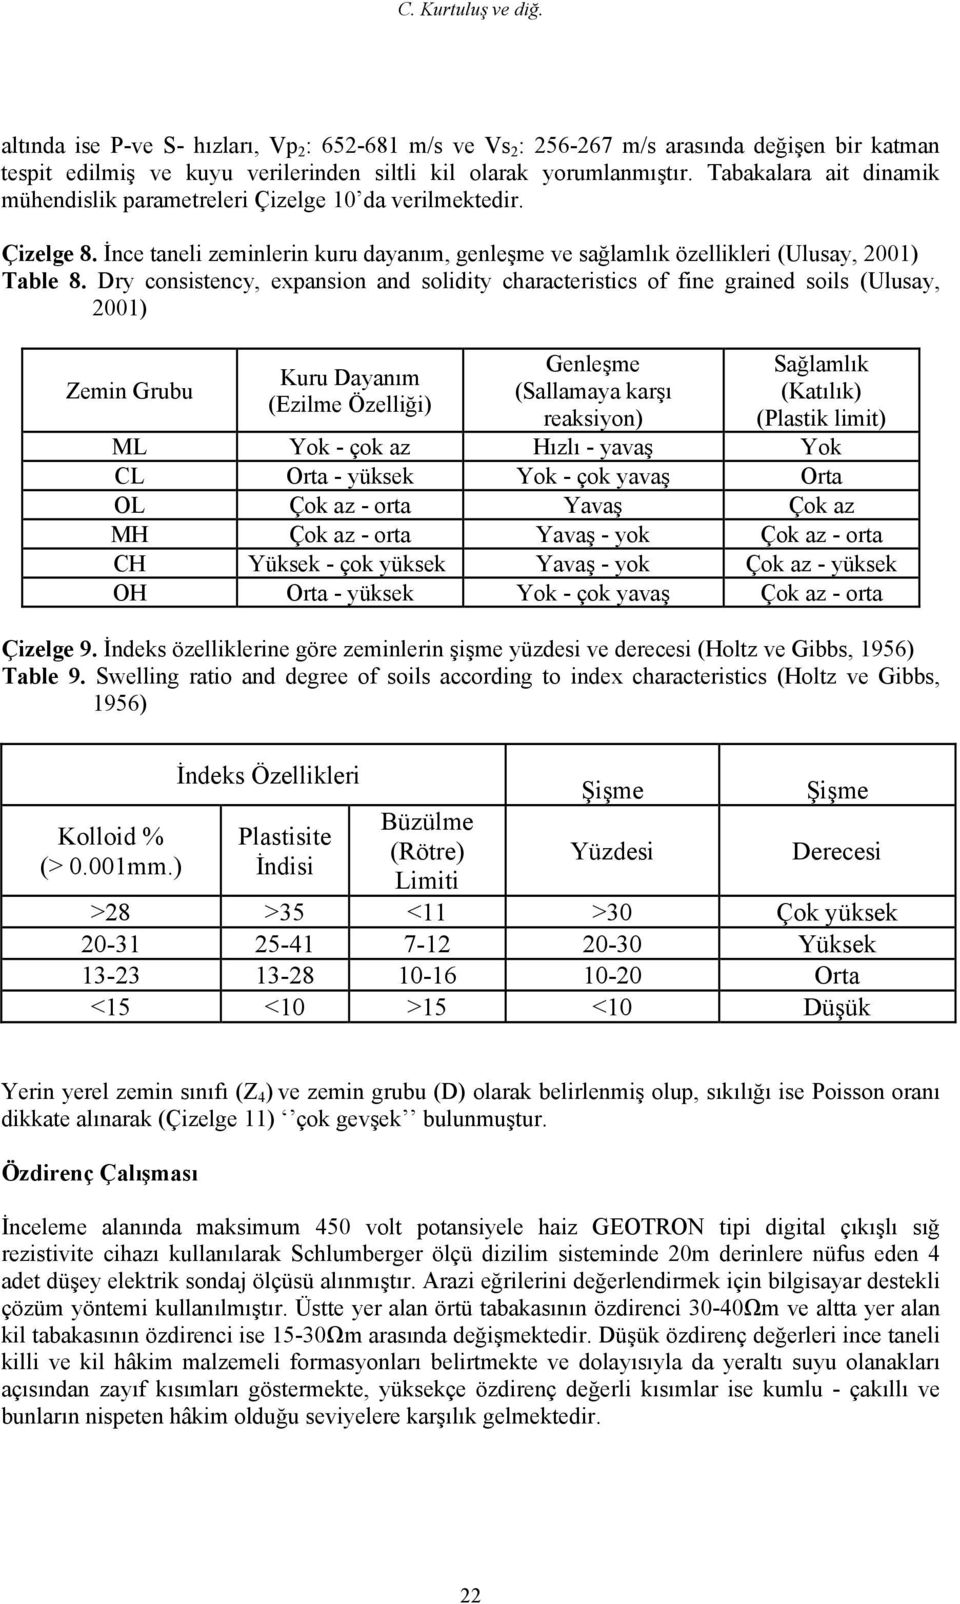 Dry consistency, expansion and solidity characteristics of fine grained soils (Ulusay, 2001) Zemin Grubu Kuru Dayanım (Ezilme Özelliği) Genleşme (Sallamaya karşı reaksiyon) Sağlamlık (Katılık)